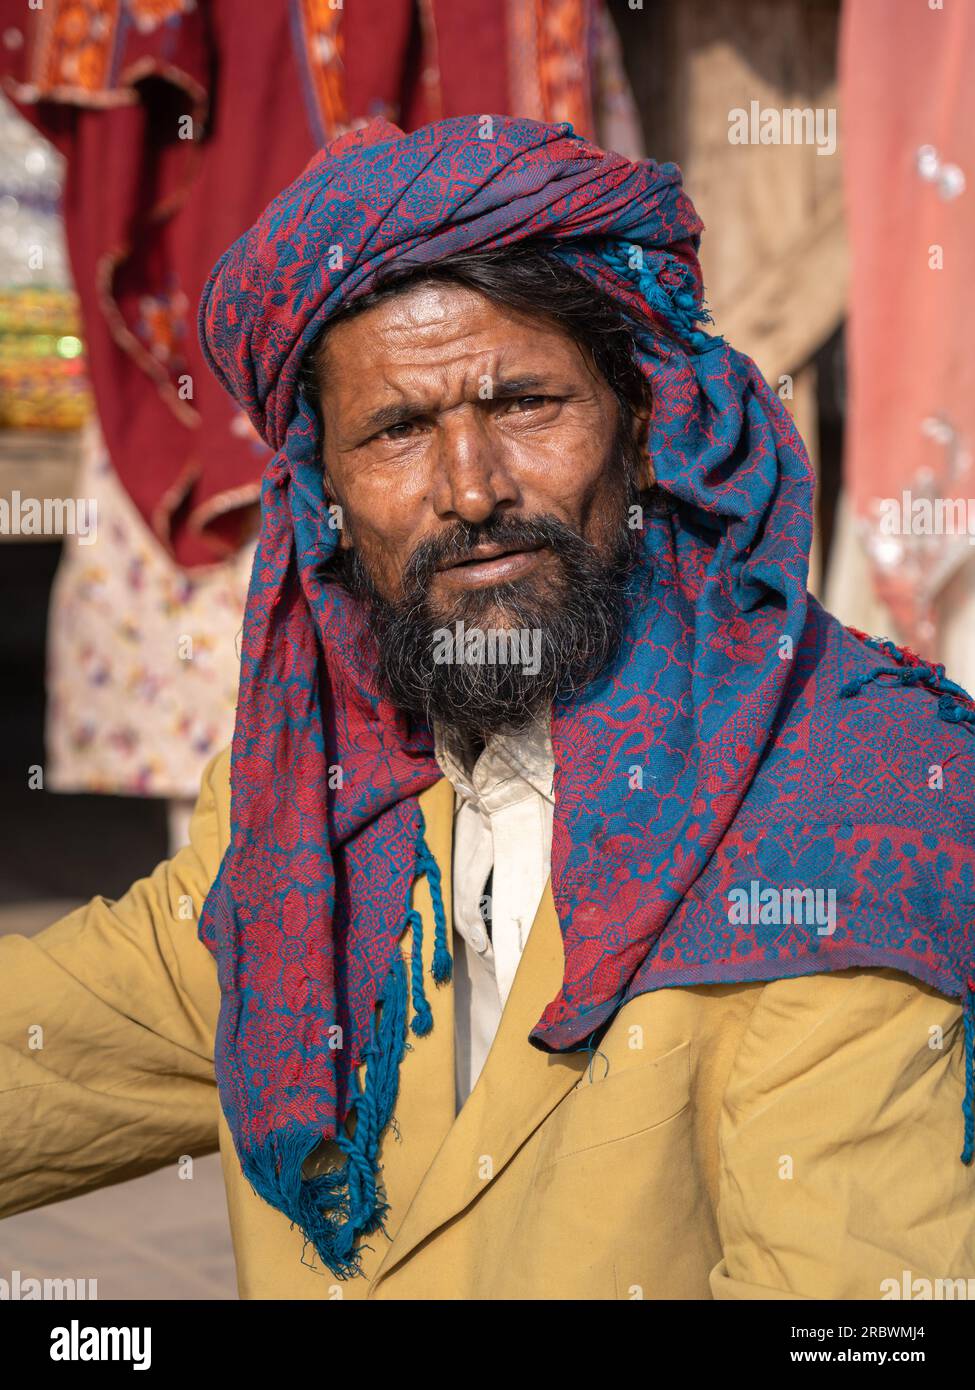 UCH Sharif, Punjab, Pakistan - 11 12 2019 : Portrait vertical d'un homme d'âge moyen du punjabi rural portant un foulard traditionnel rouge et bleu Banque D'Images